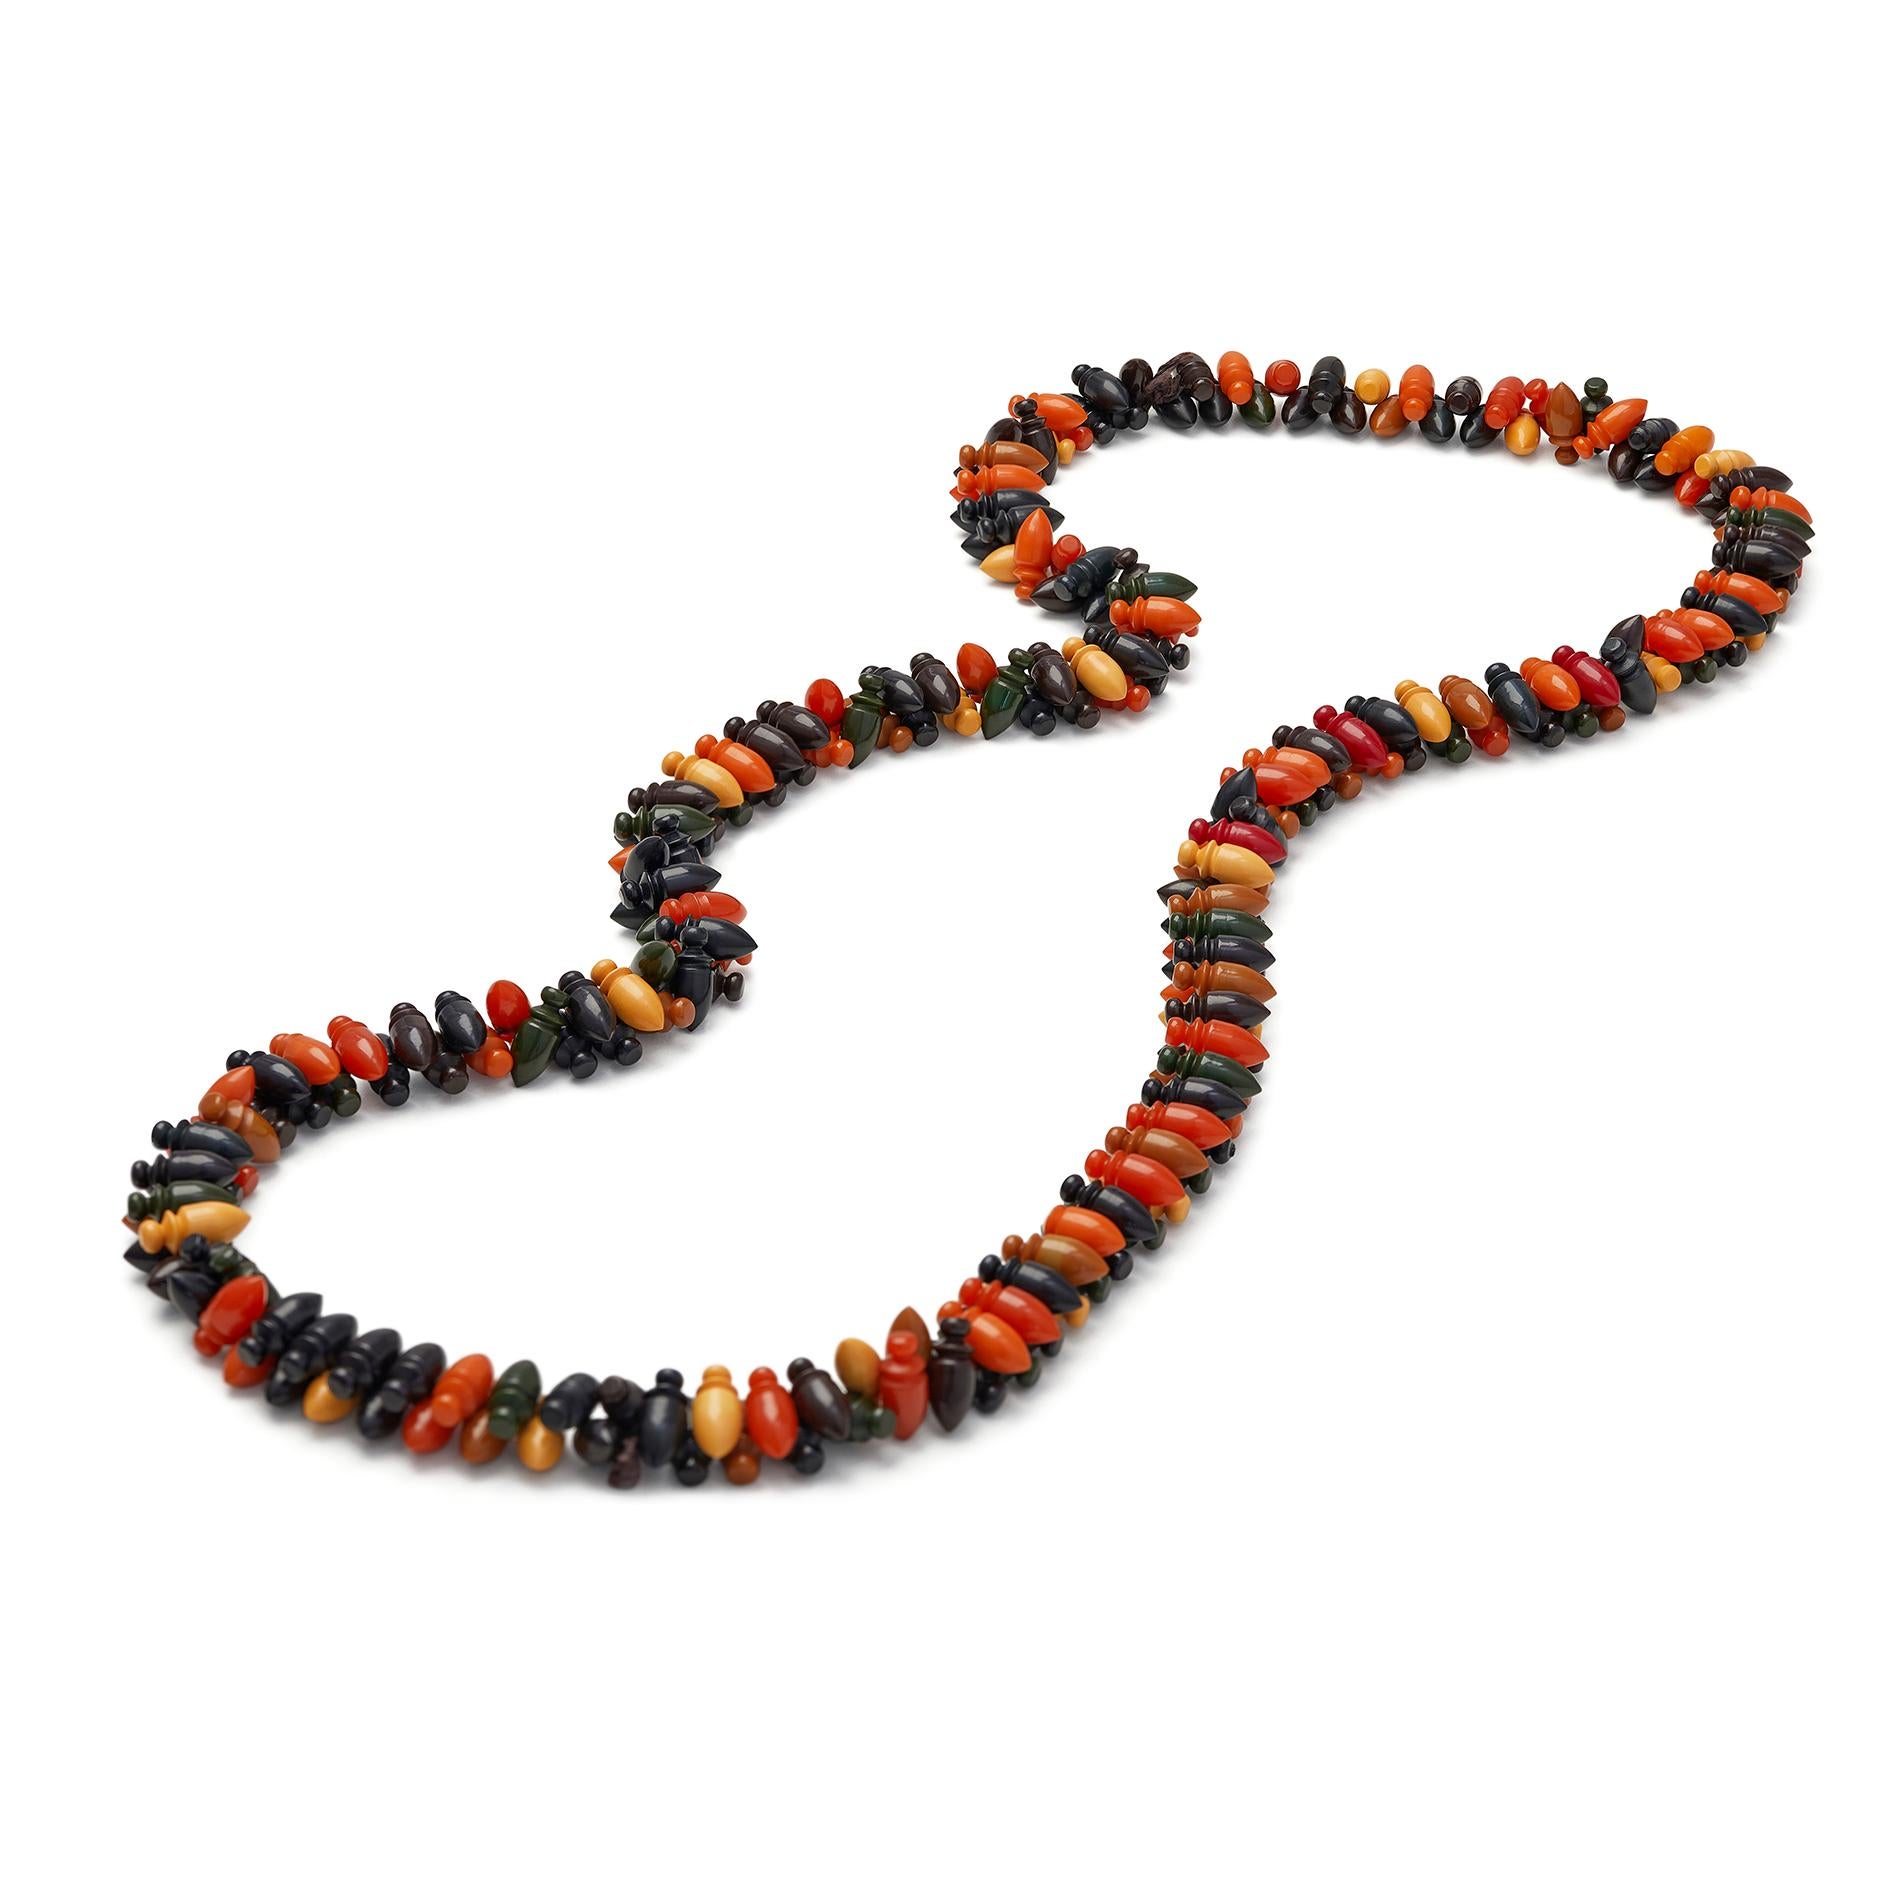 Beeindruckende Bakelit-Halskette aus den 1930er Jahren, bestehend aus bunten Perlen in verschiedenen Schattierungen von Dunkelgrün, Senf, Orange, Hellbraun, Rot, Braun und Schwarz - Farben, die lebensmittelbezogene Namen wie Maiscreme, Buttertoffee,